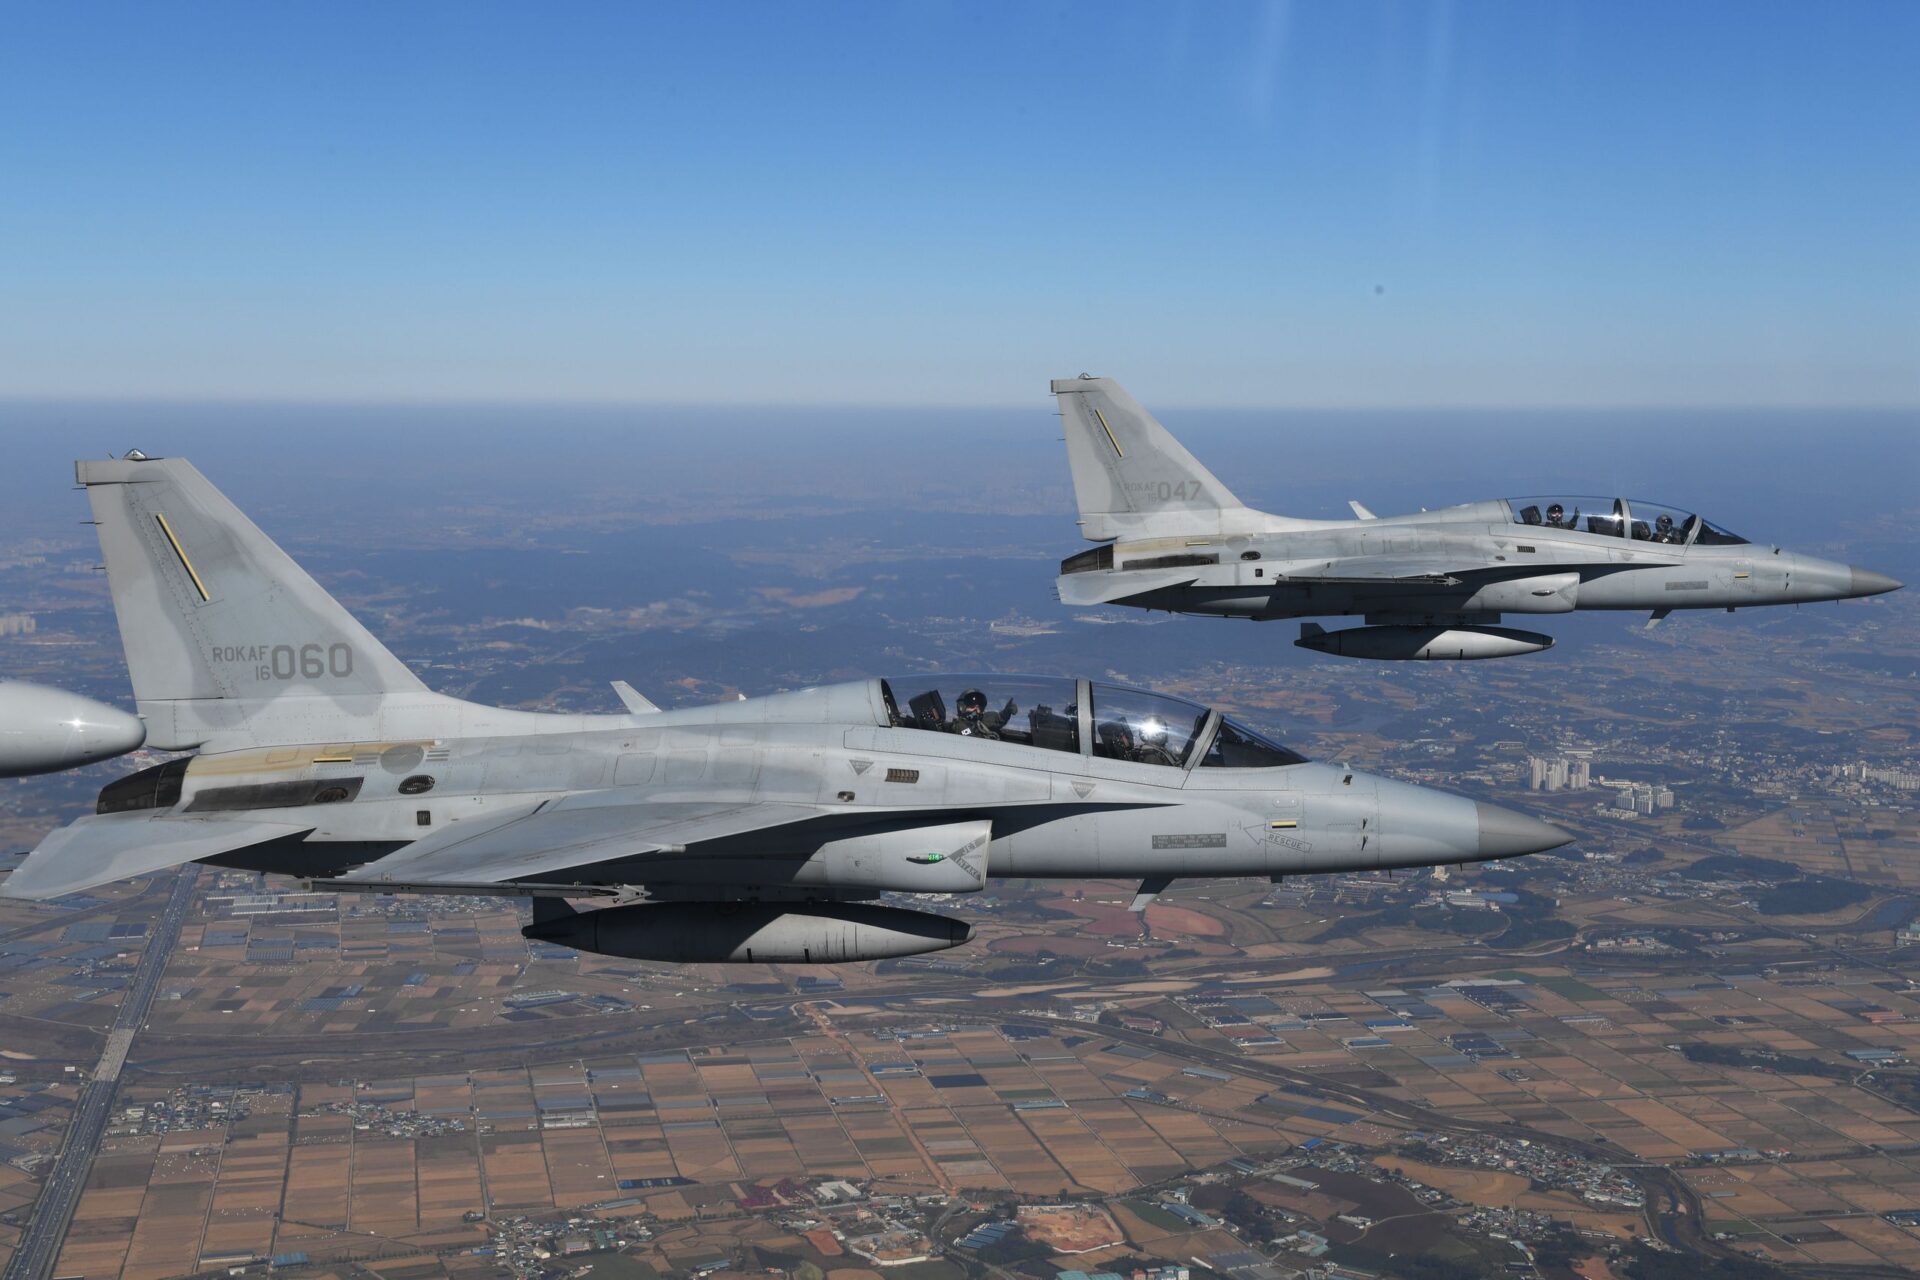 Malezja chce kupić koreańskie myśliwce FA-50 zamiast rosyjskich MiG-35 i Jak-130